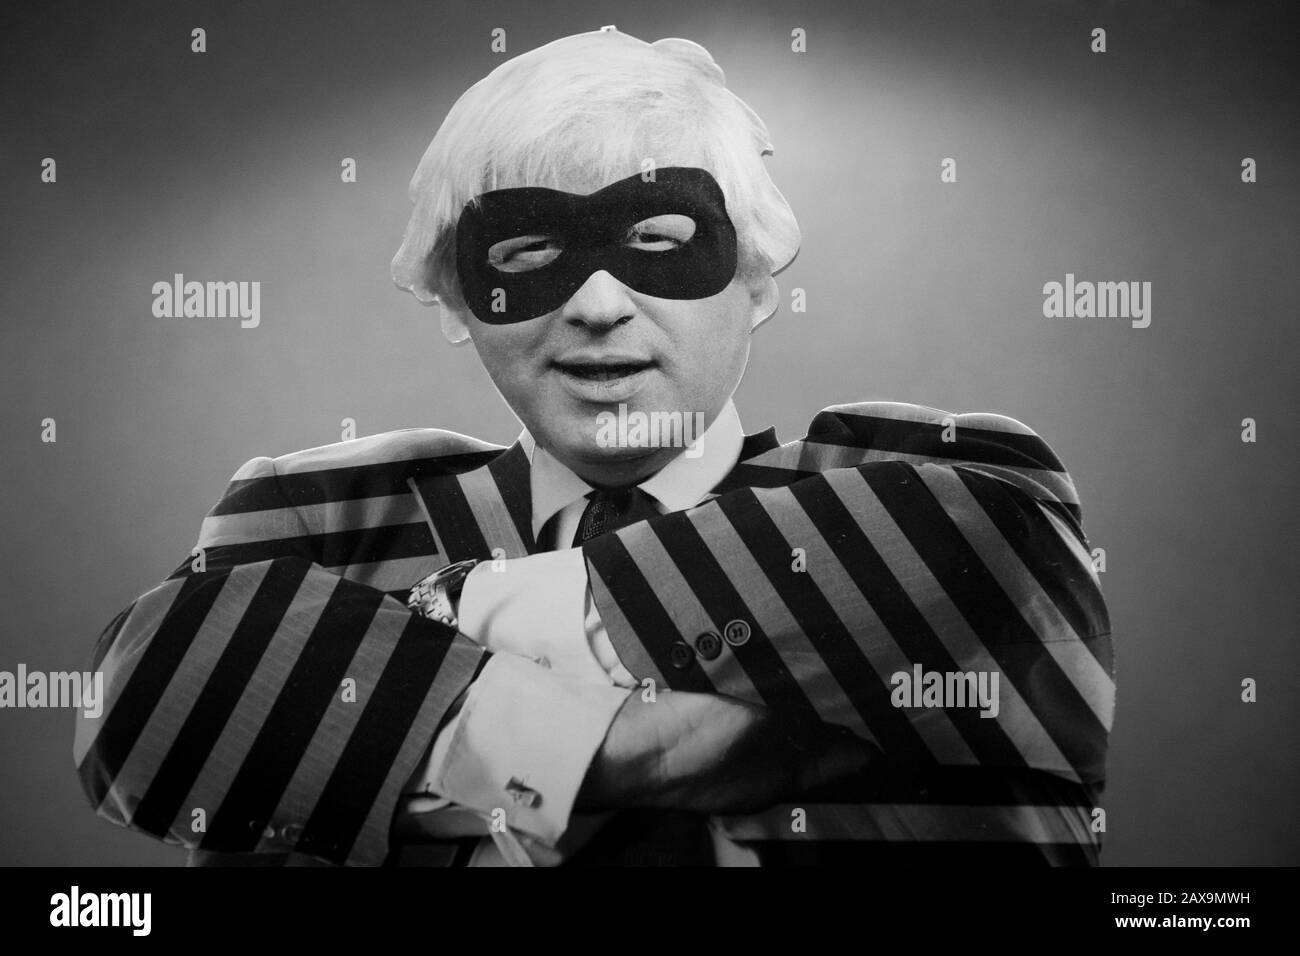 Pappausschnitt von Boris Johnson mit Maske und abisoliertem Jackett. Stockfoto